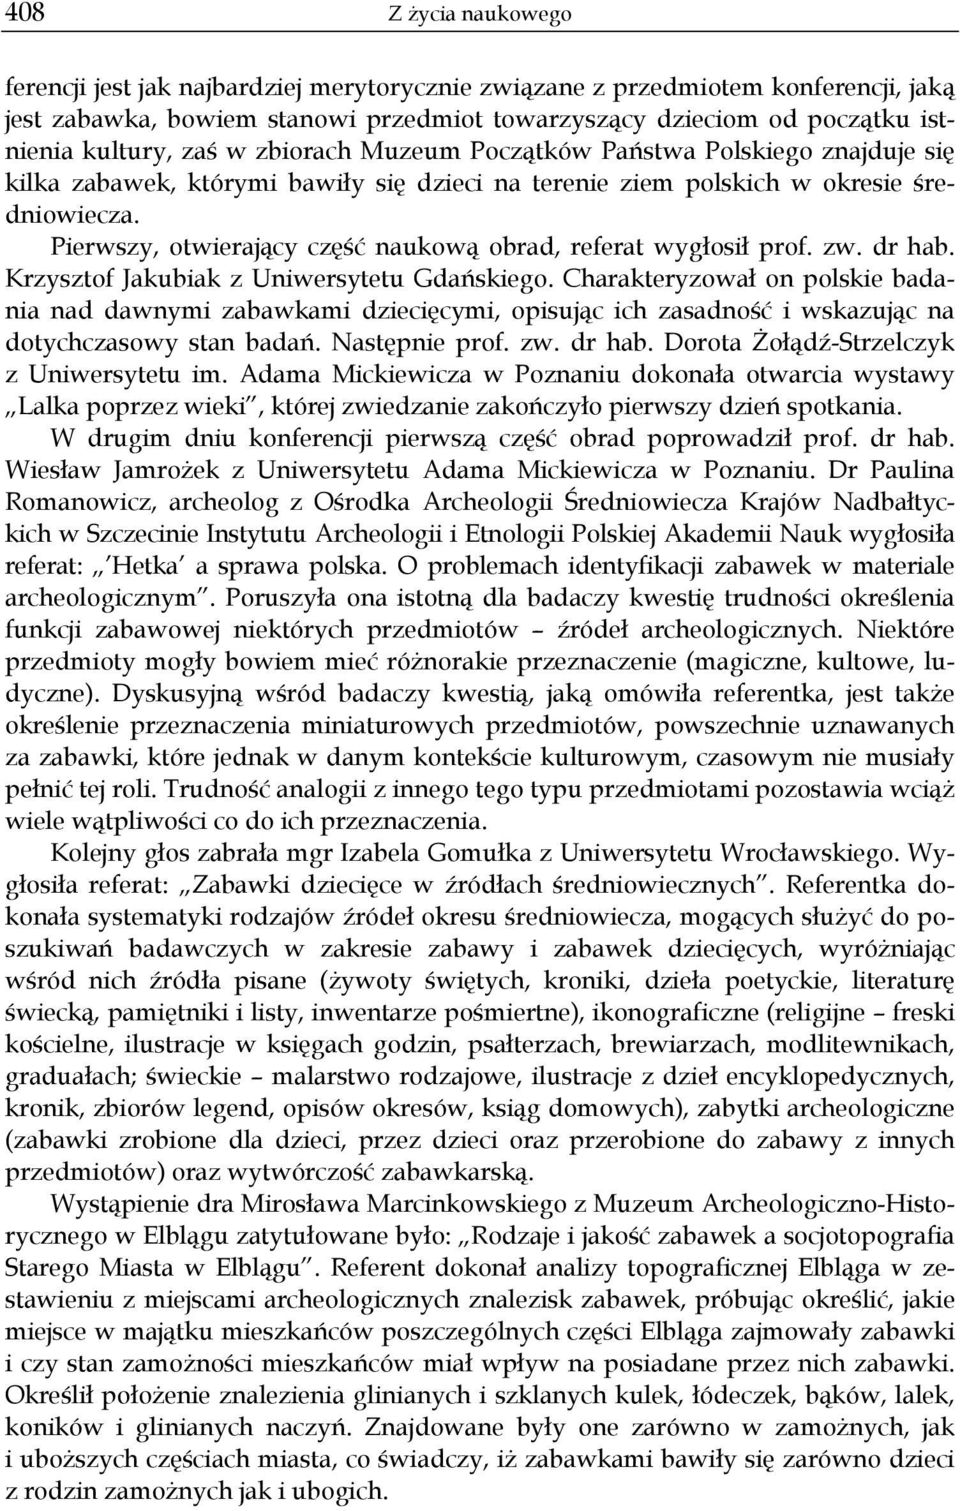 Pierwszy, otwierający część naukową obrad, referat wygłosił prof. zw. dr hab. Krzysztof Jakubiak z Uniwersytetu Gdańskiego.